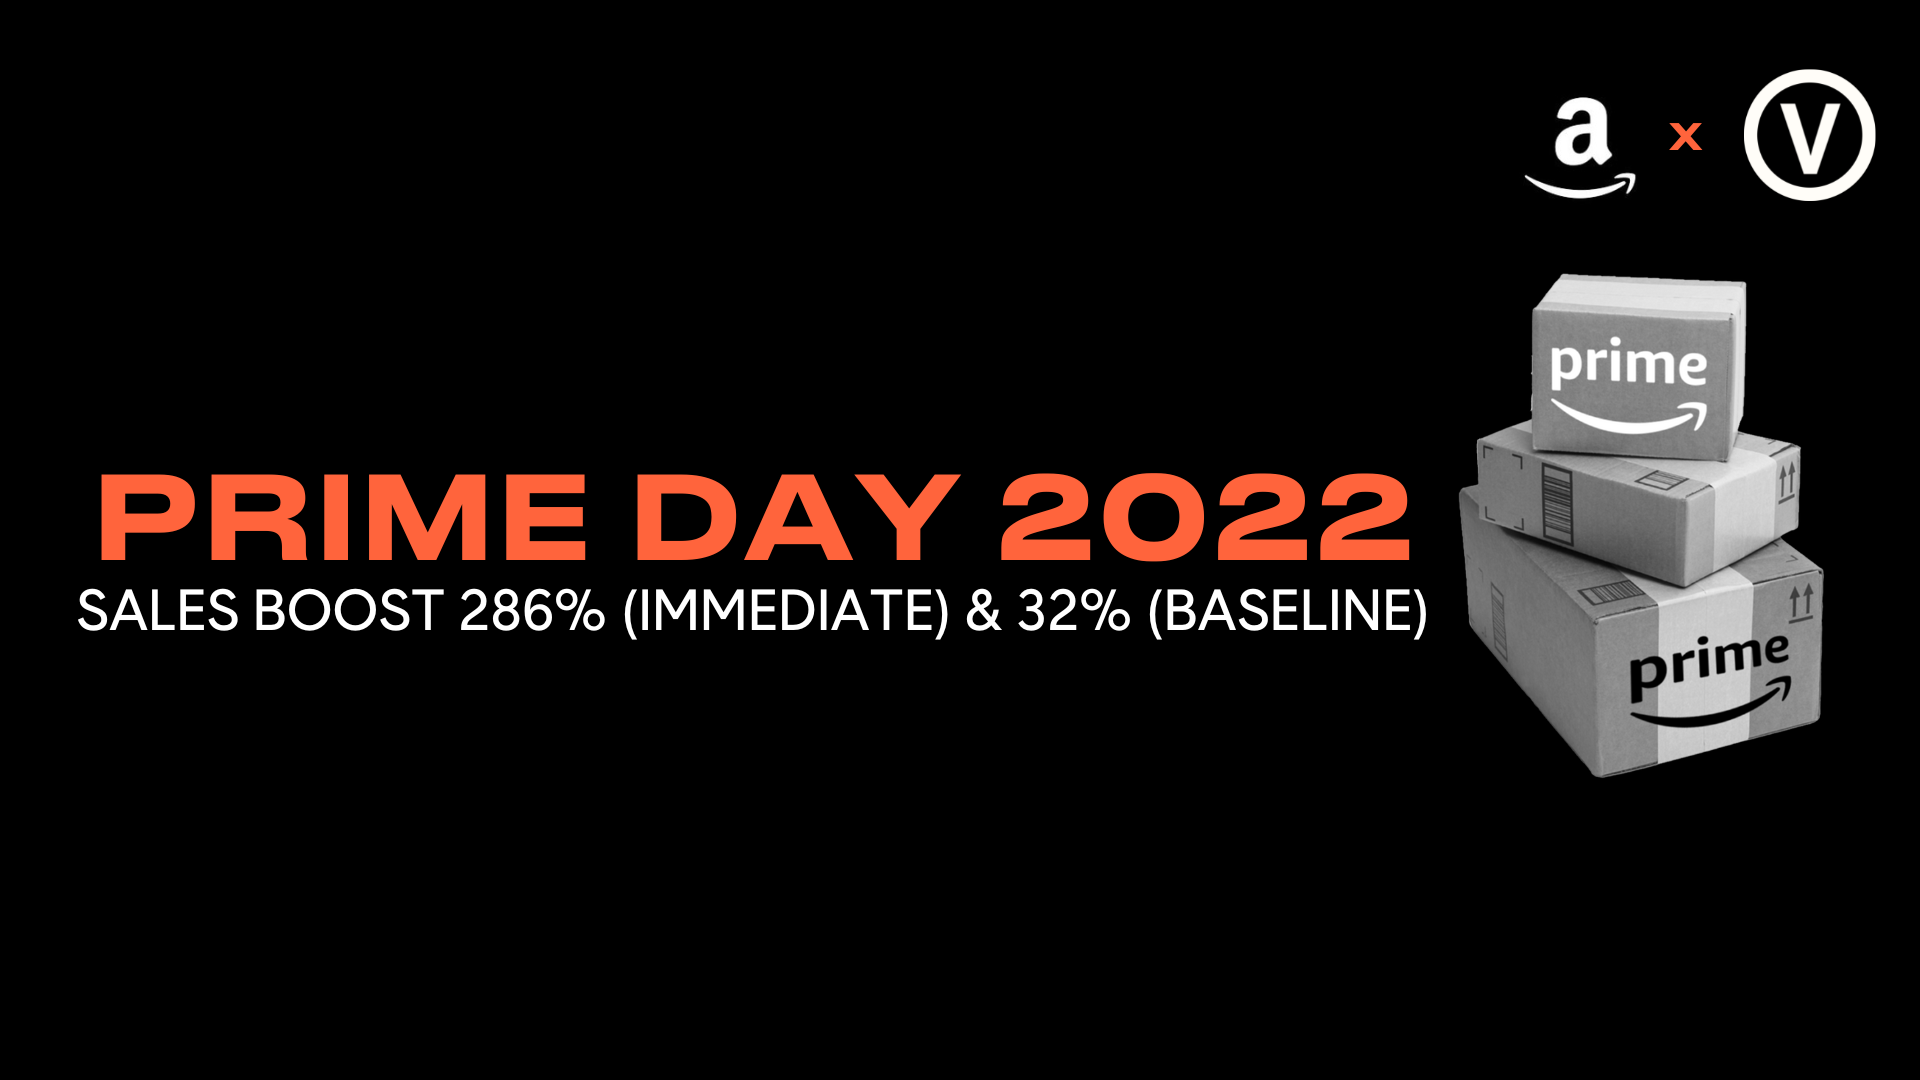 Amazon Prime Day 2022 Strategies